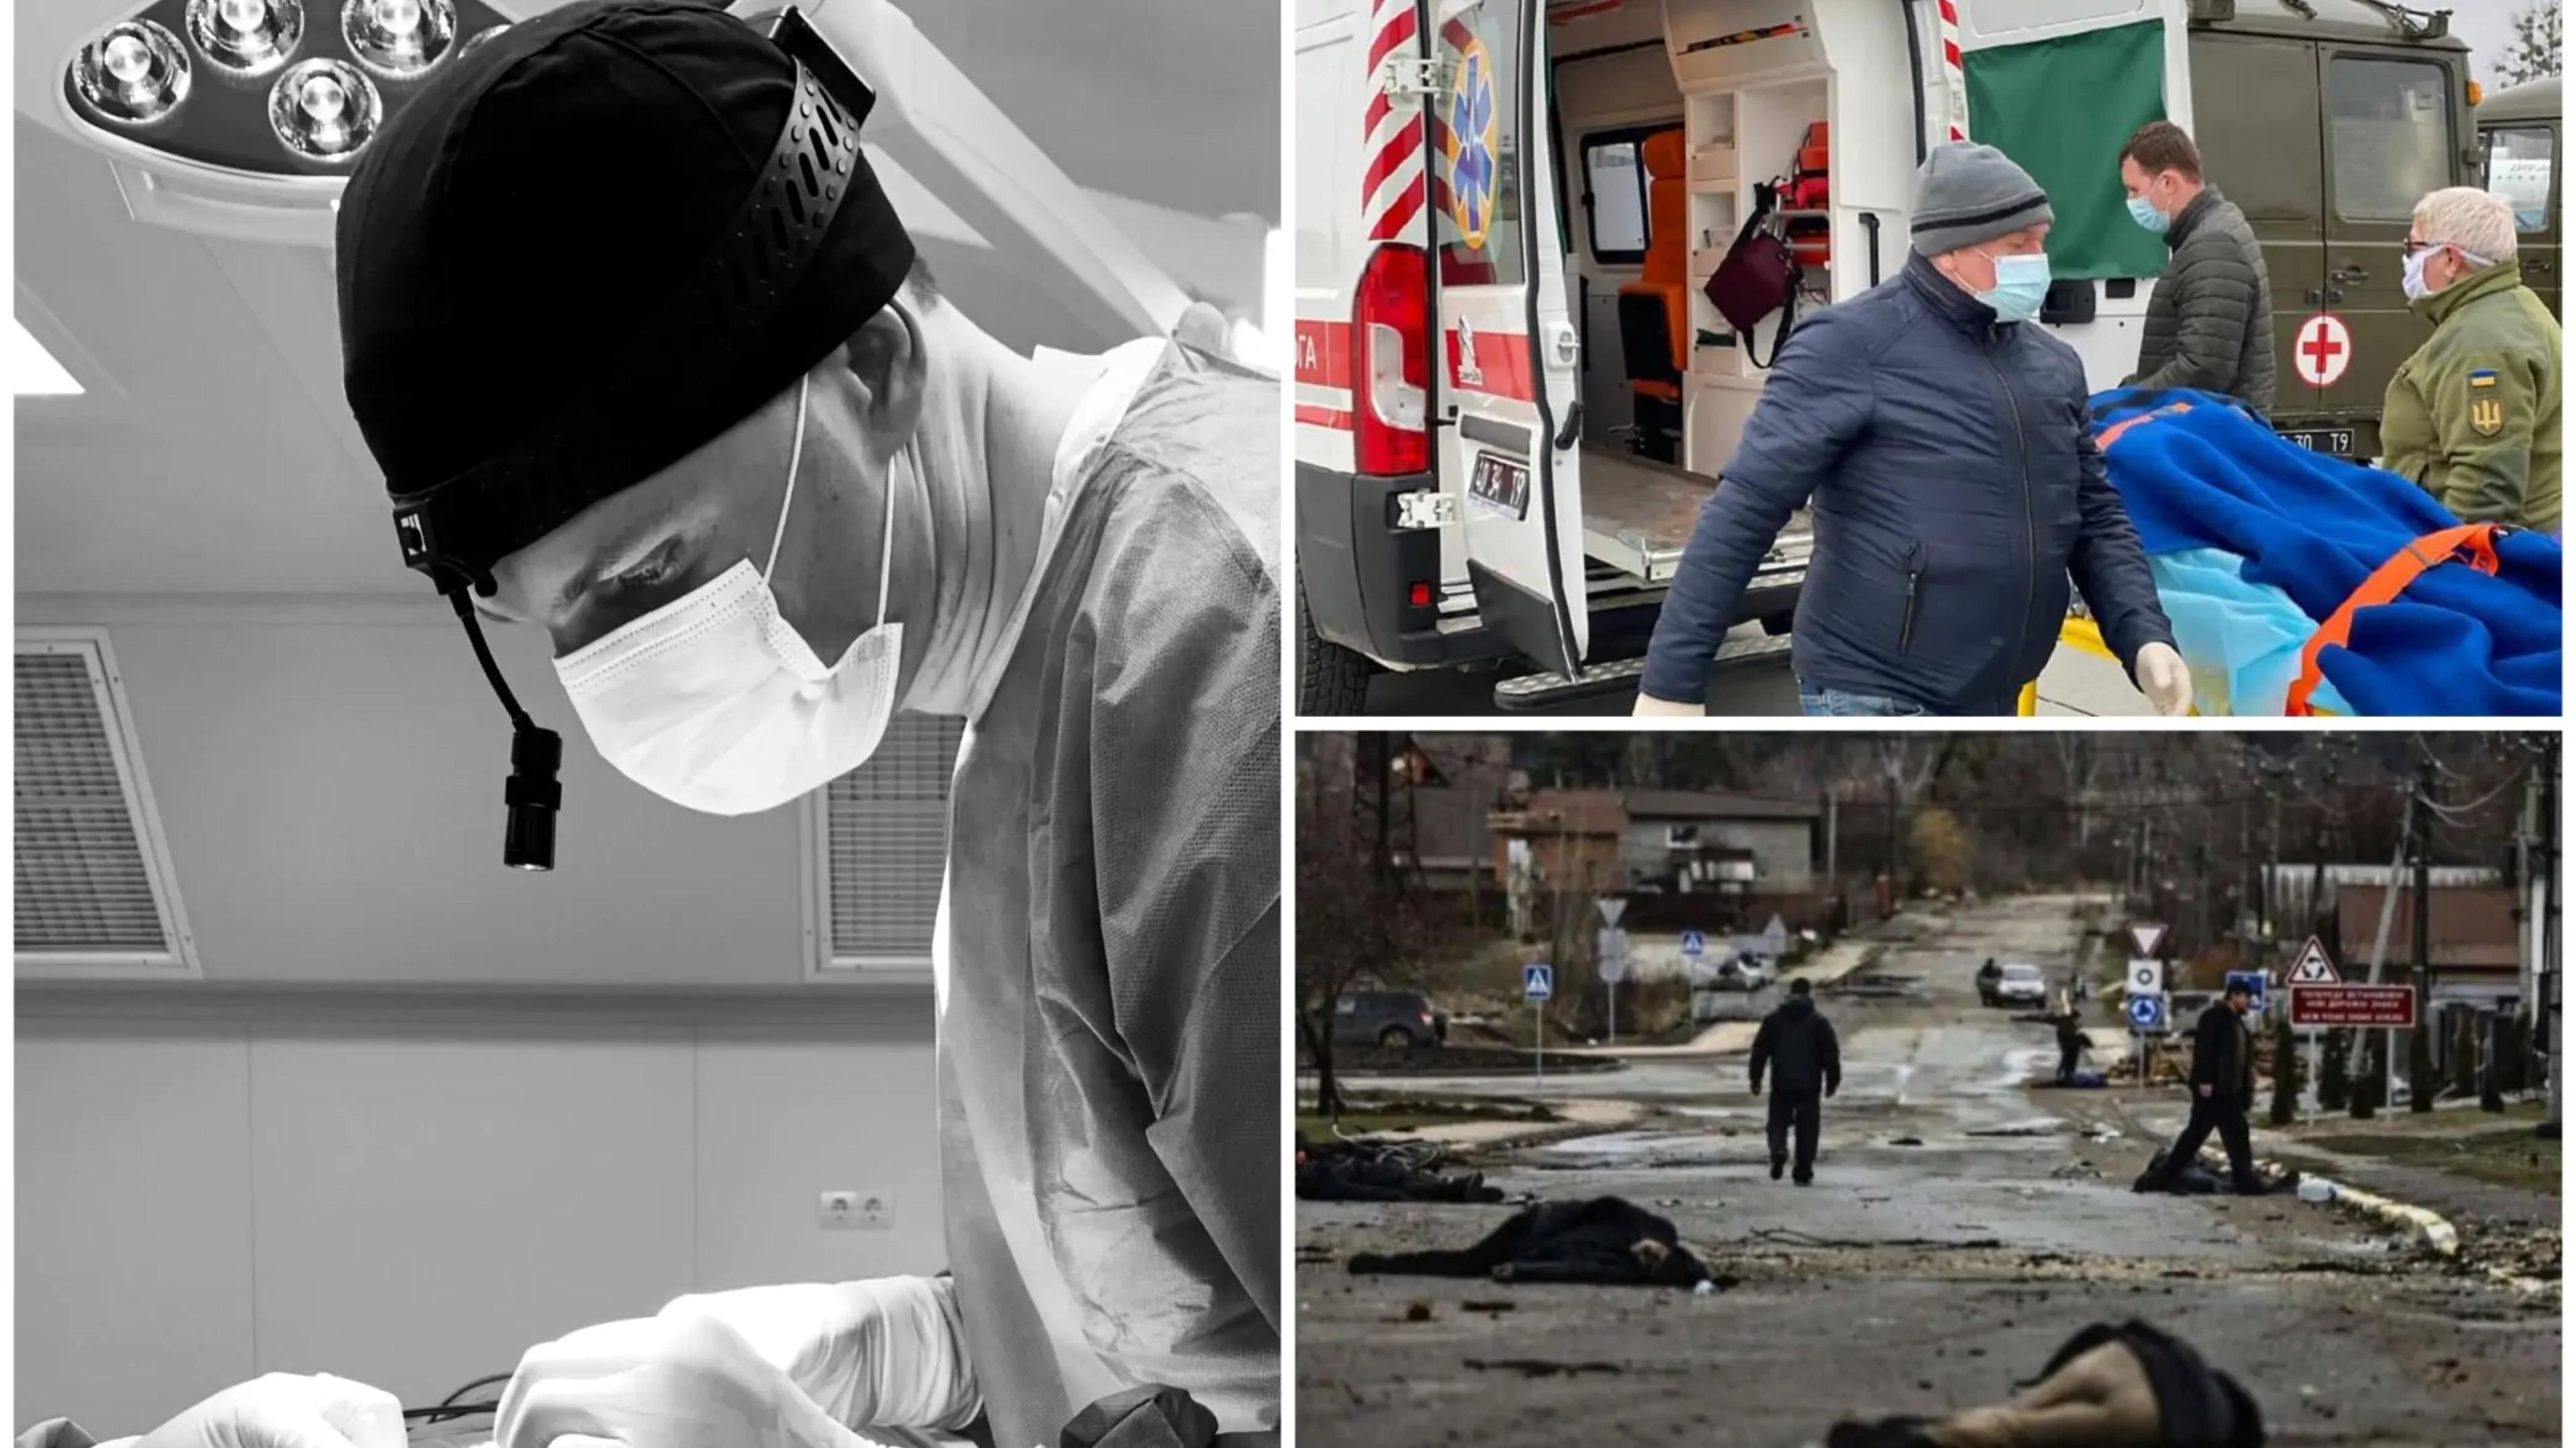 Doctors Helping the Injured in Ukraine